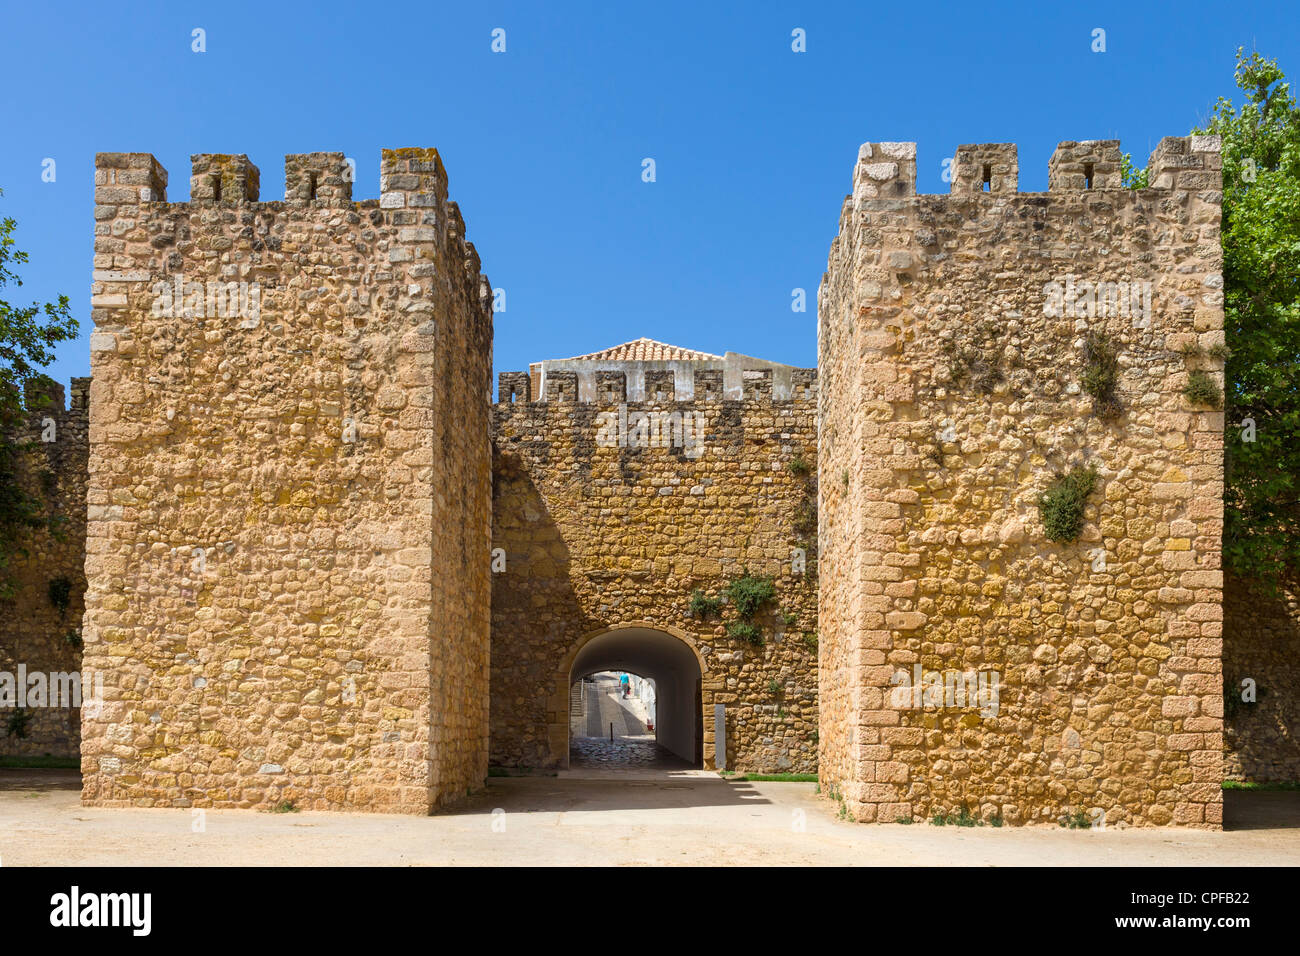 L'Arco de Sao Goncalo (Sao Goncalo Gate) nelle mura della Città Vecchia (Cidade Velha), Lagos, Algarve, PORTOGALLO Foto Stock